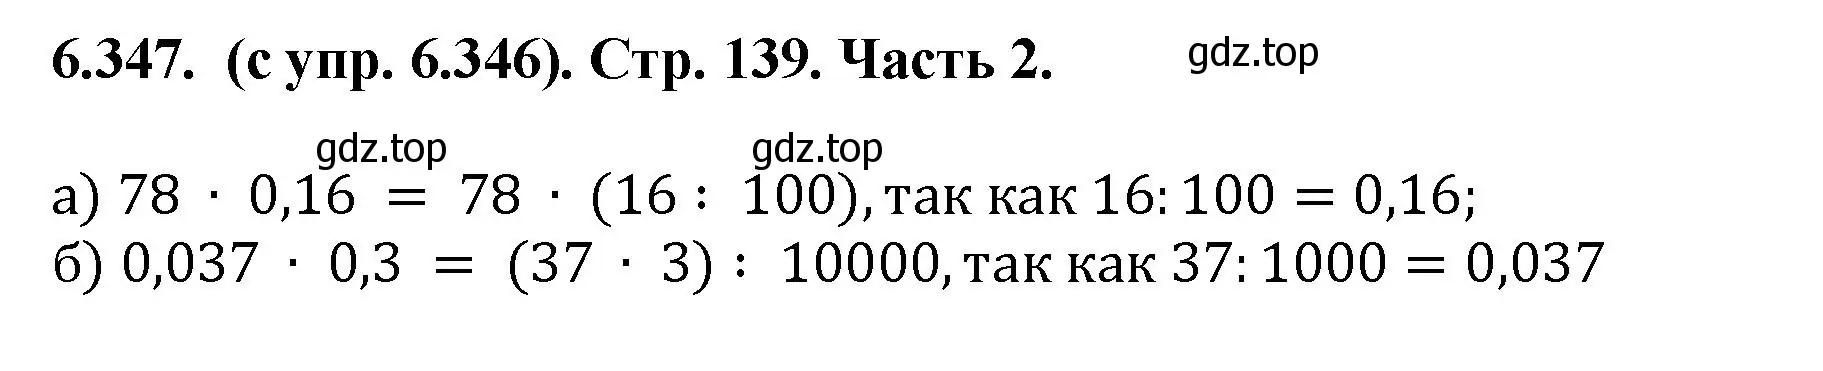 Решение номер 6.347 (страница 139) гдз по математике 5 класс Виленкин, Жохов, учебник 2 часть